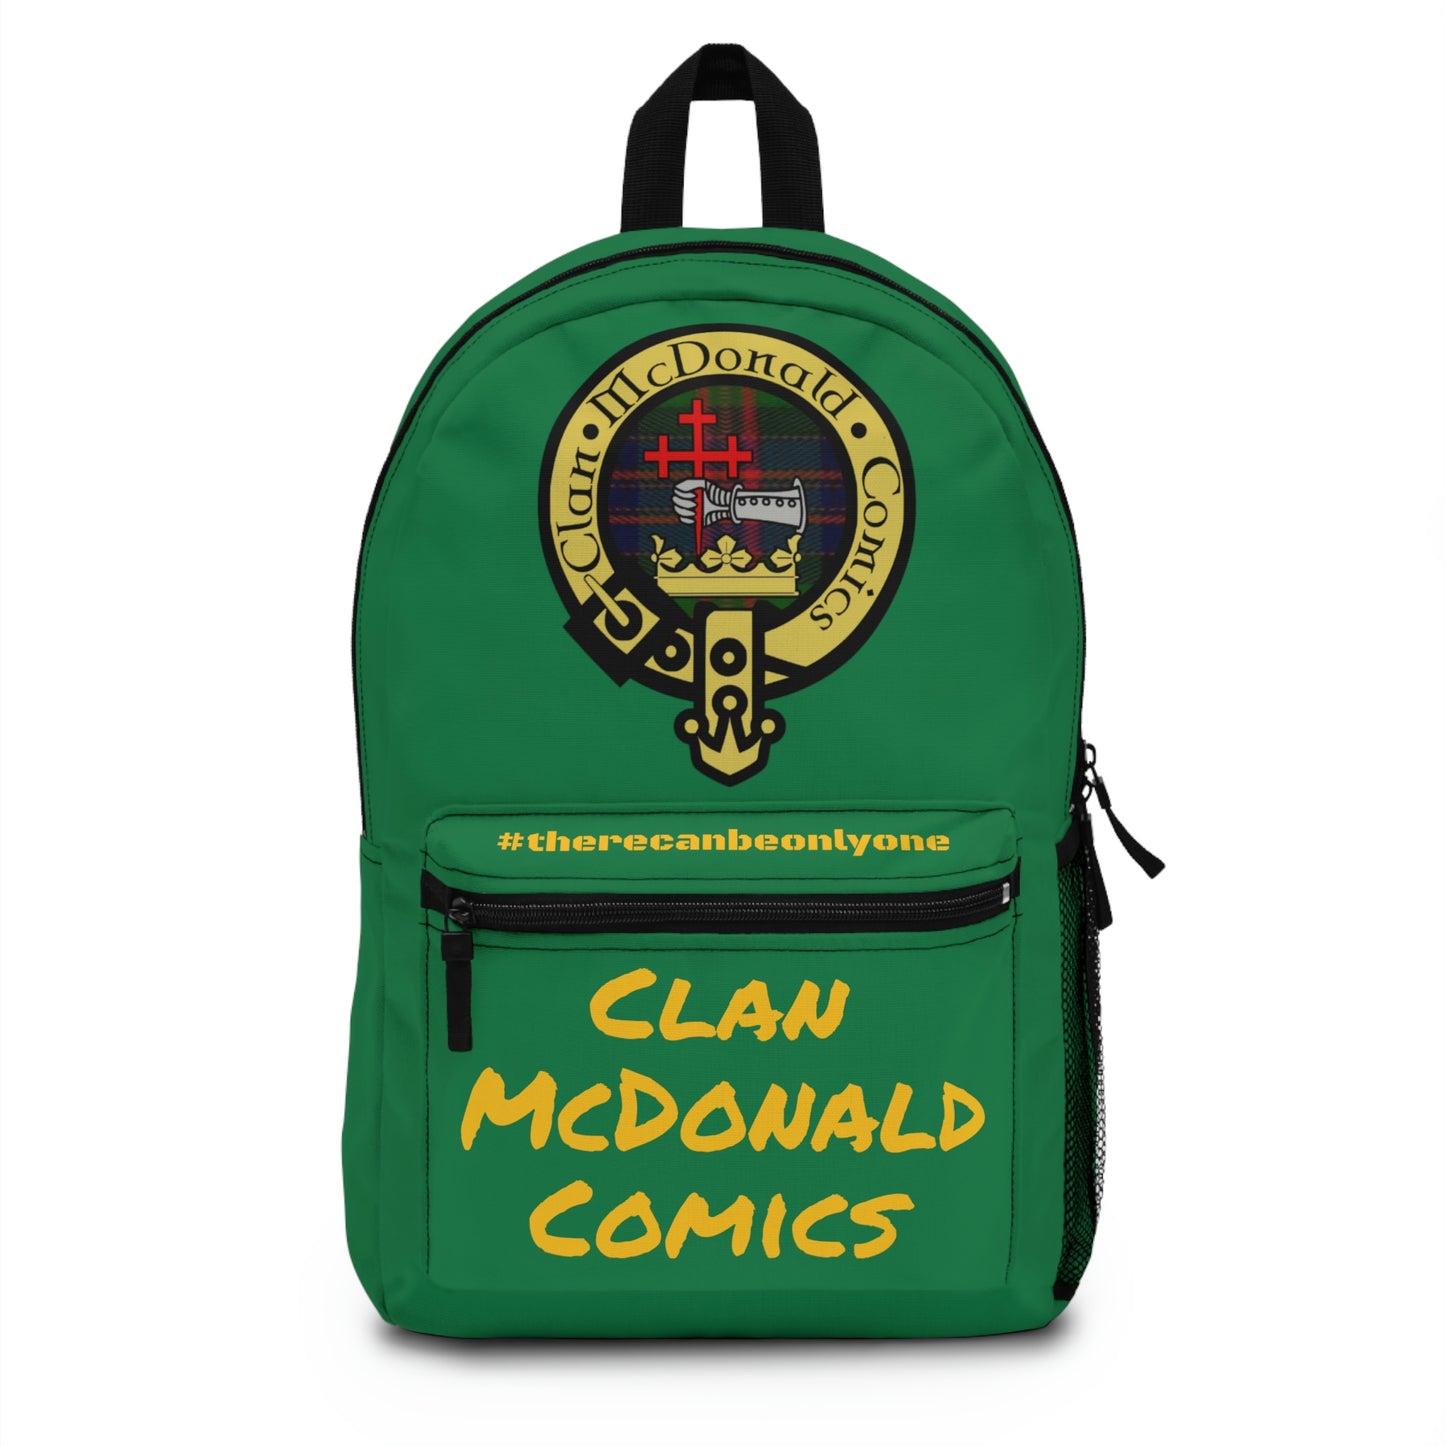 Clan McDonald Comics Backpack - Emerald Green